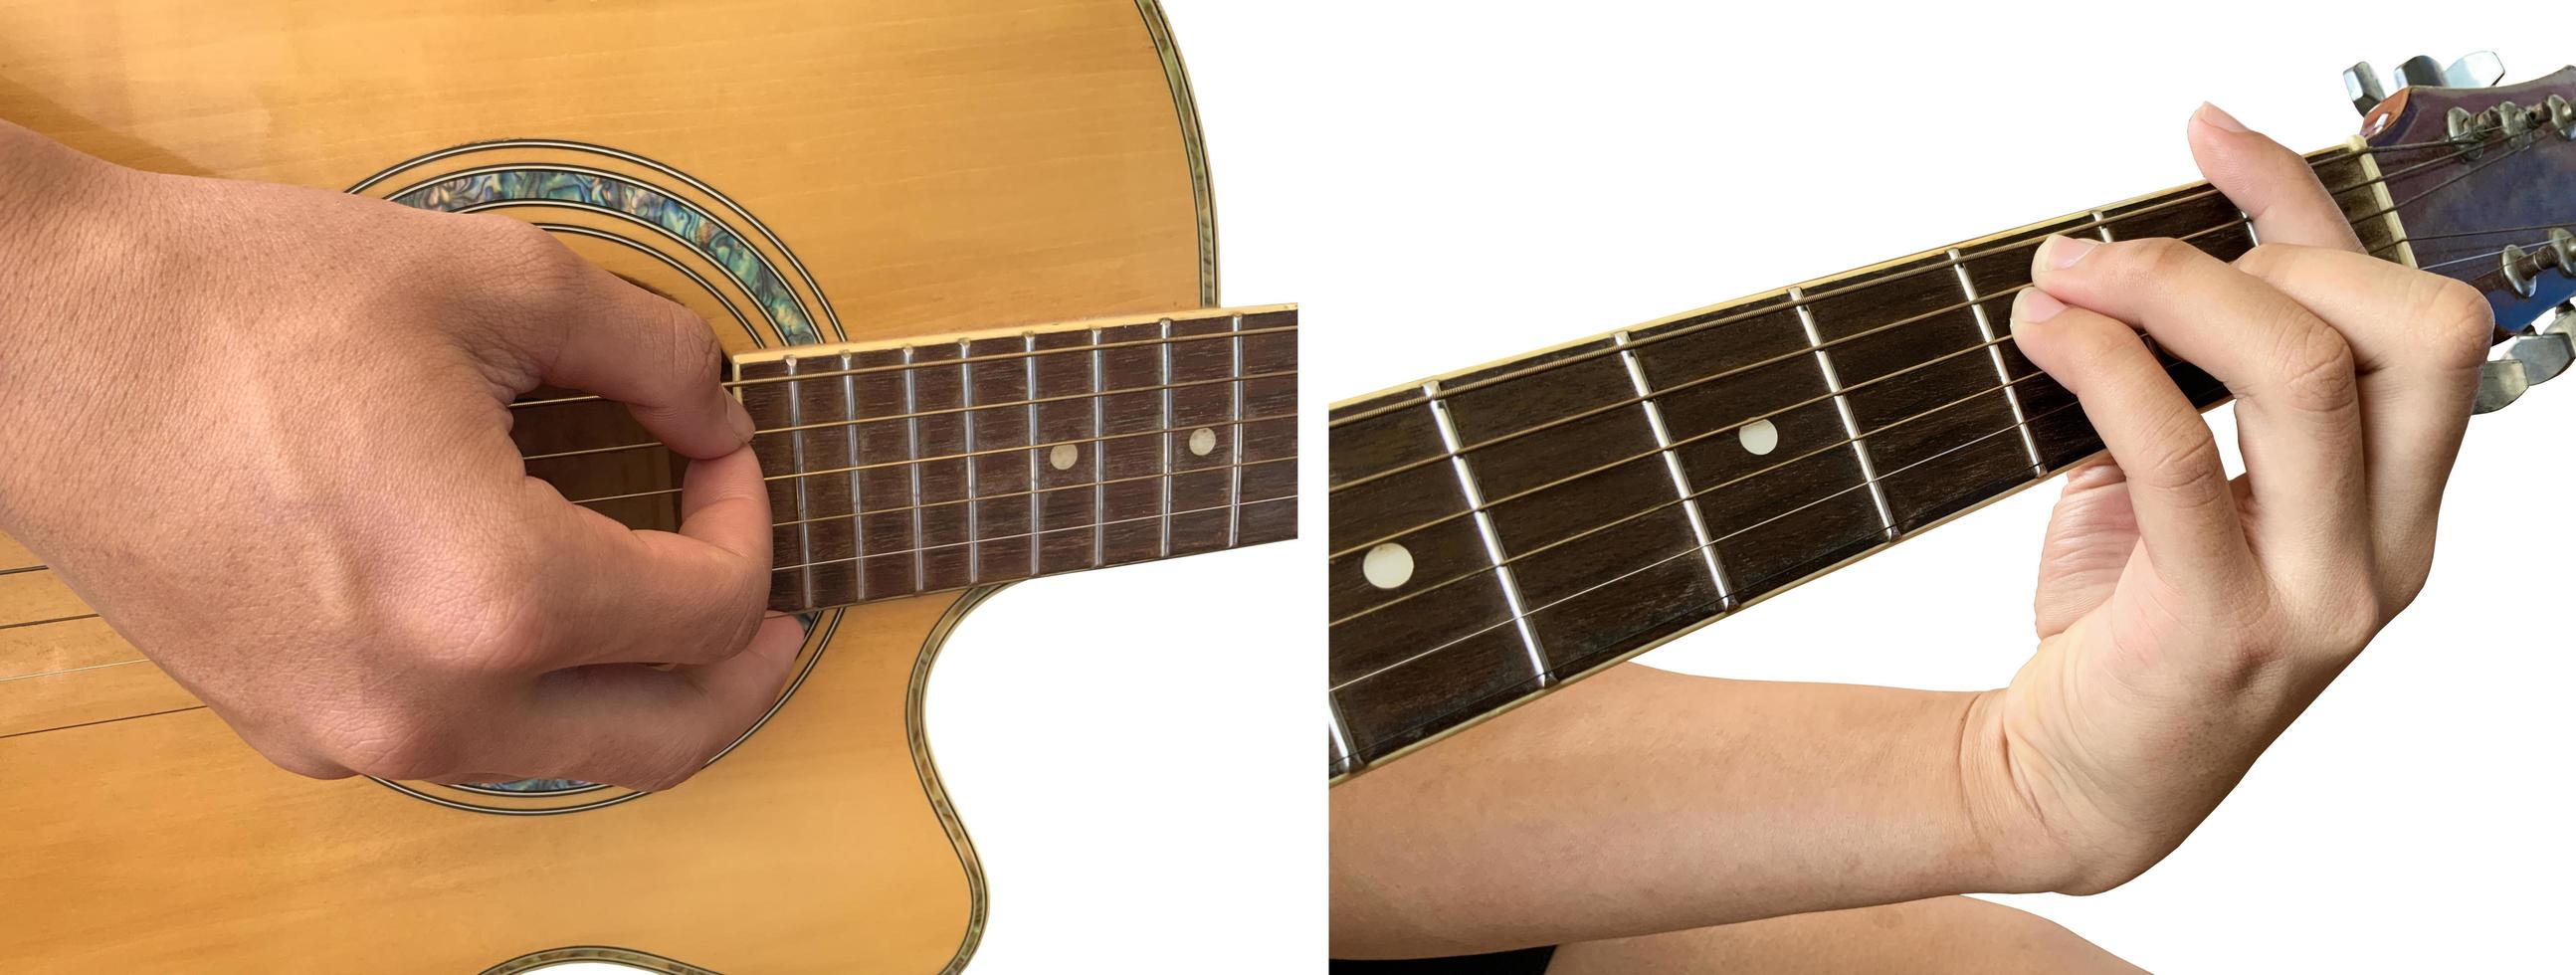 dedos isolados e mão que está tocando violão com traçados de recorte. foto